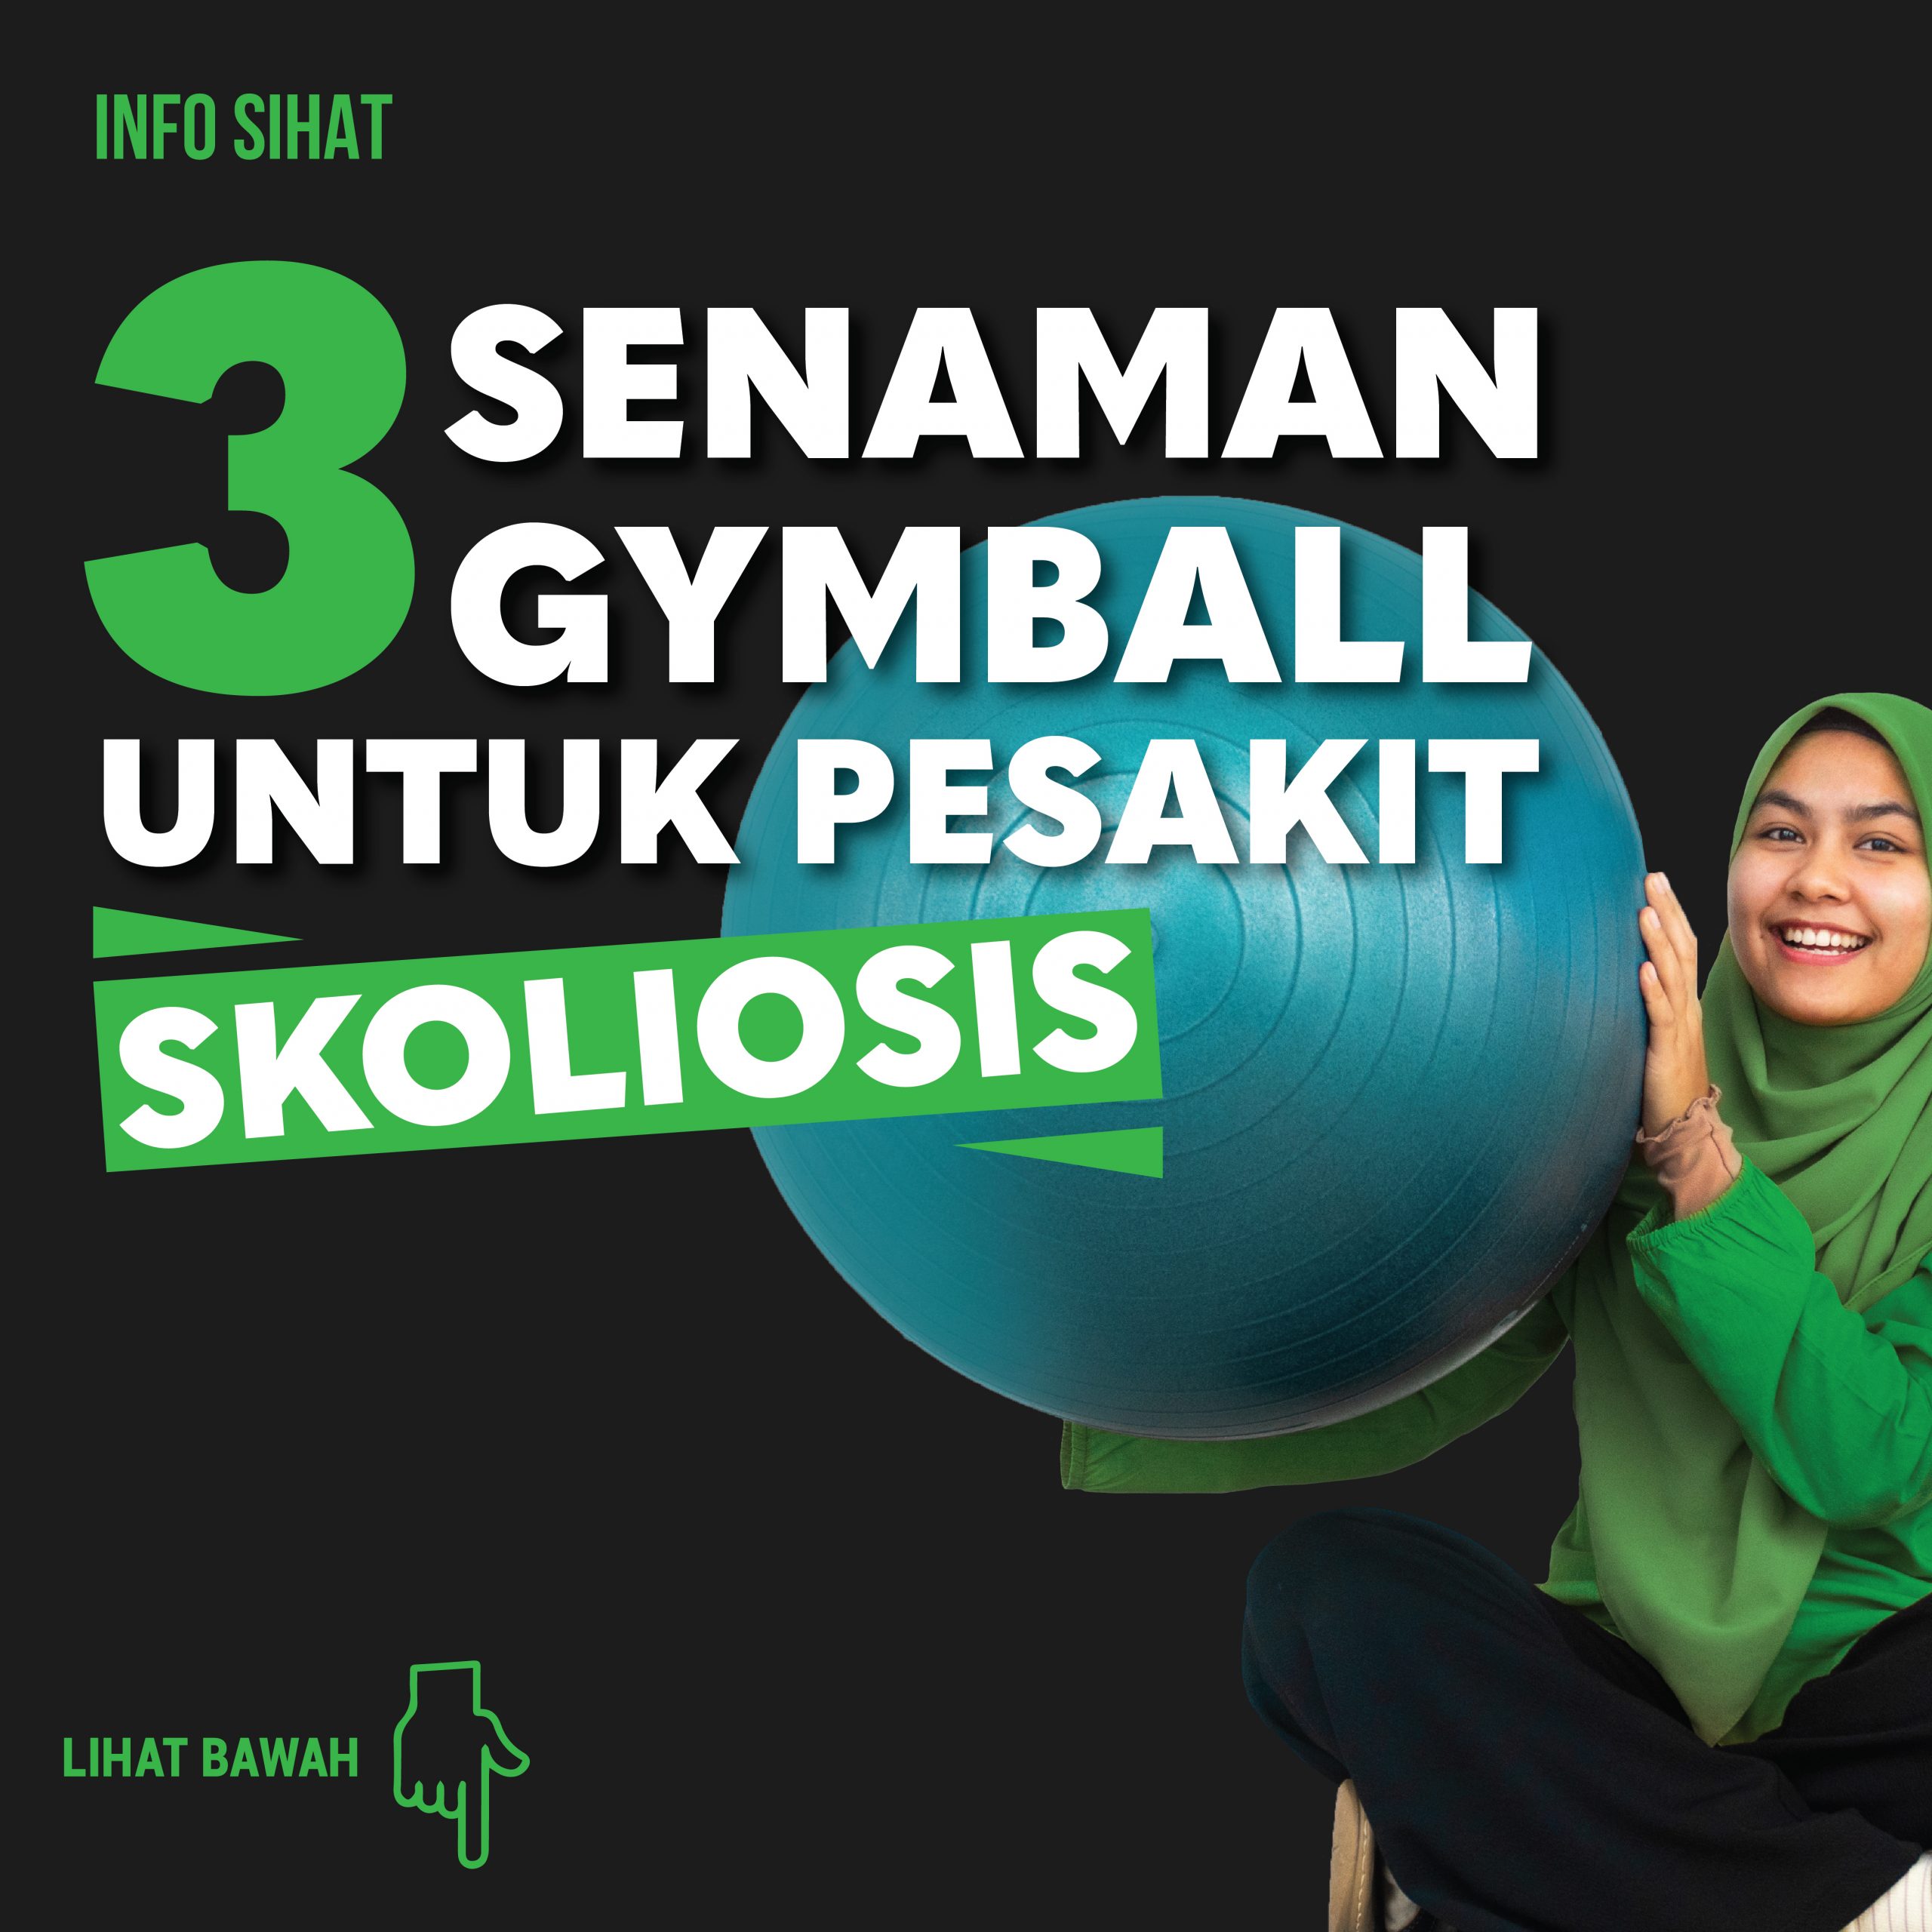 Senaman Gymball Untuk Pesakit Skoliosis